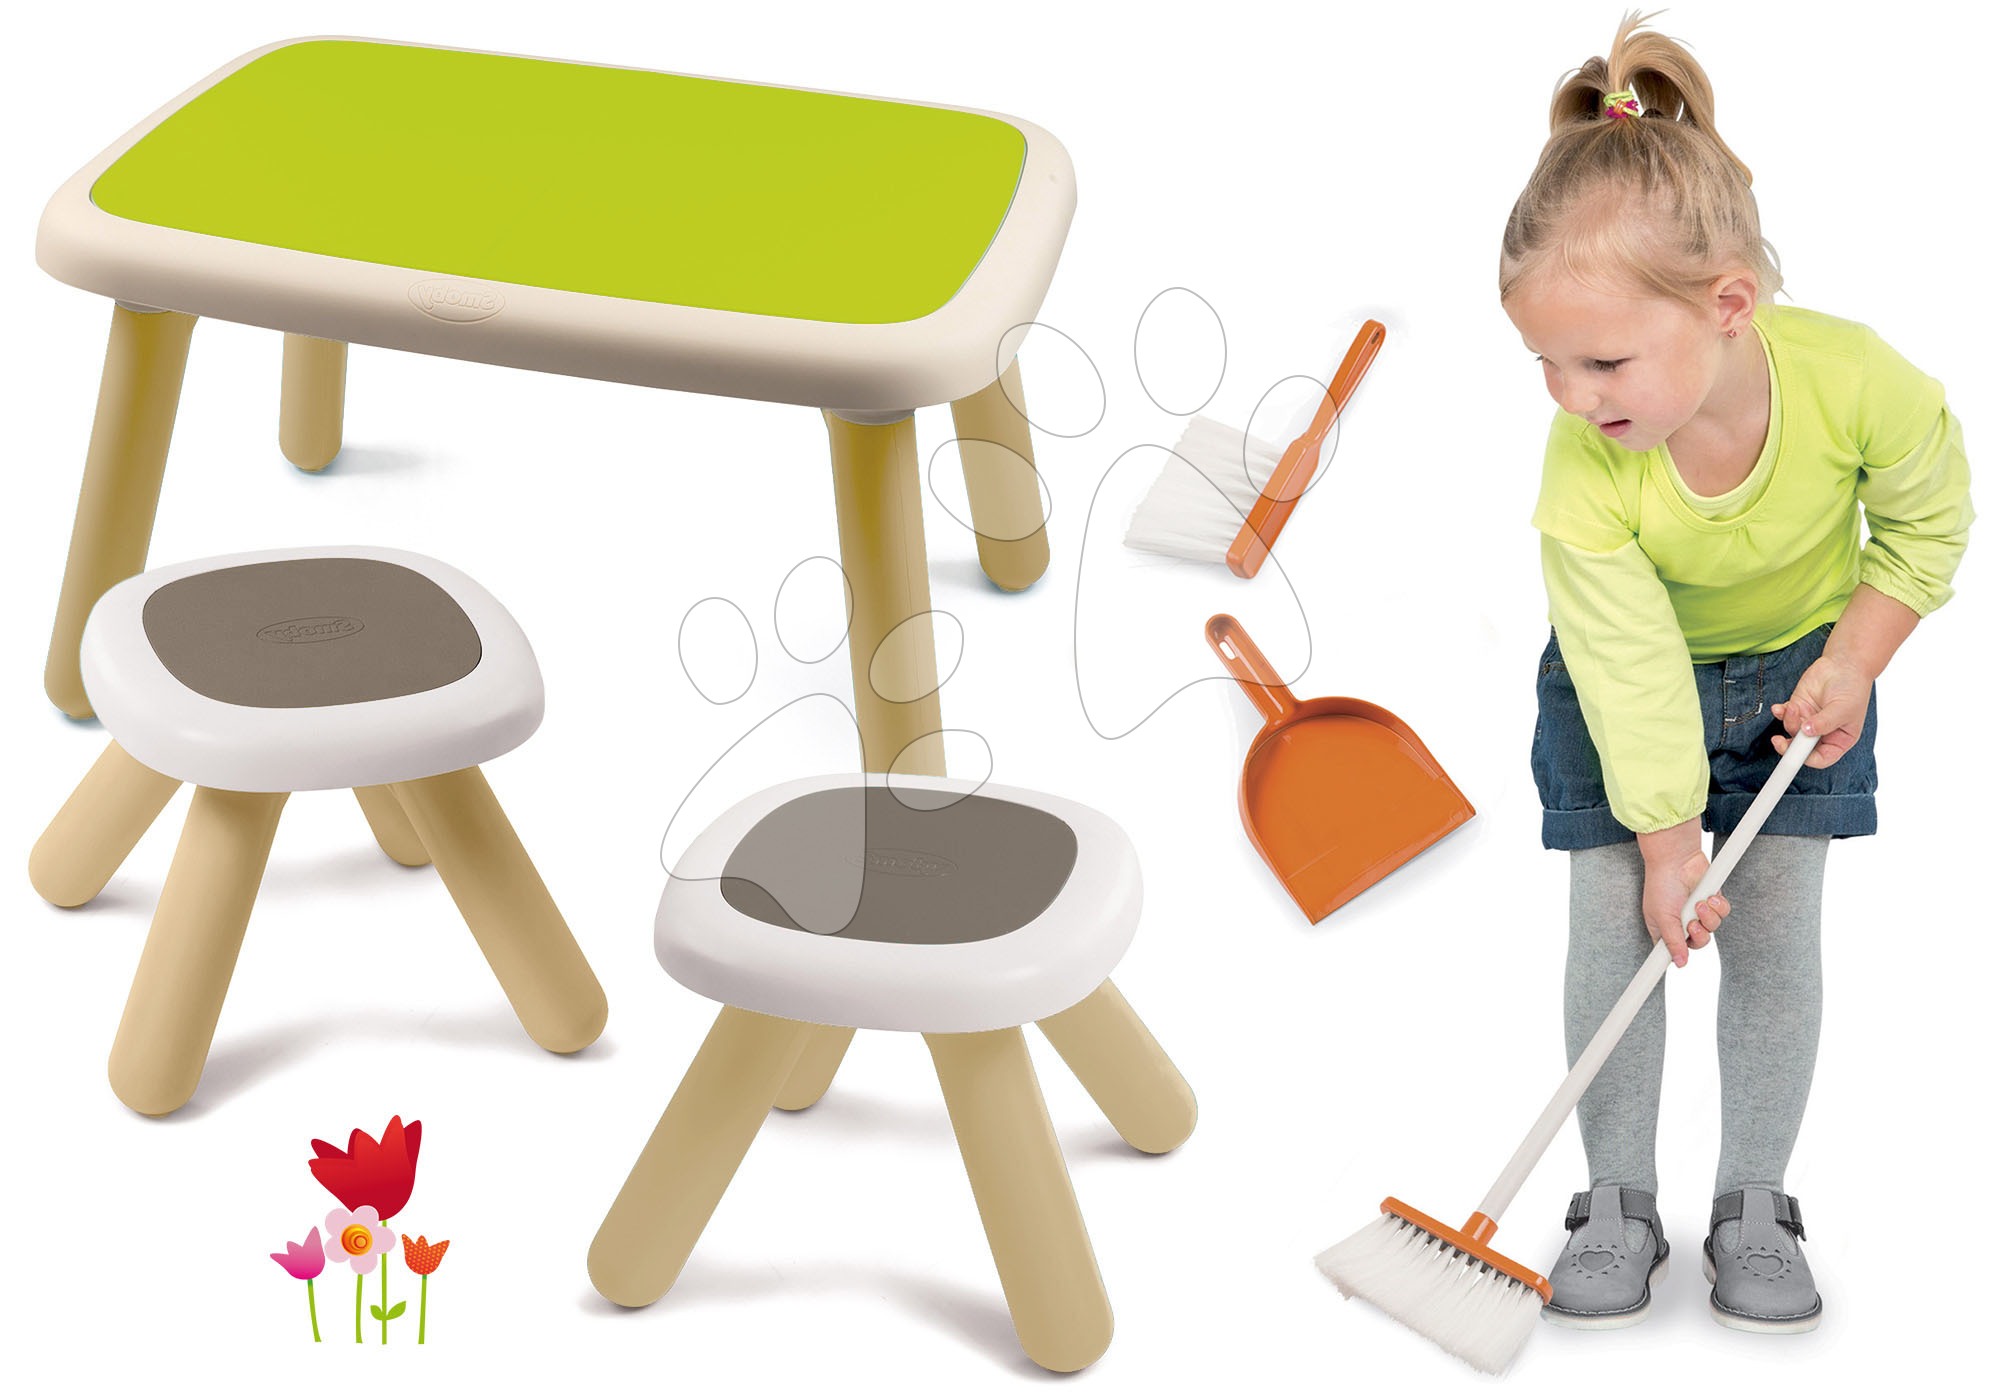 Dětský záhradní nábytek sety - Set stůl pro děti KidTable zelený Smoby se dvěma stolky s UV filtrem a smeták s lopatkou